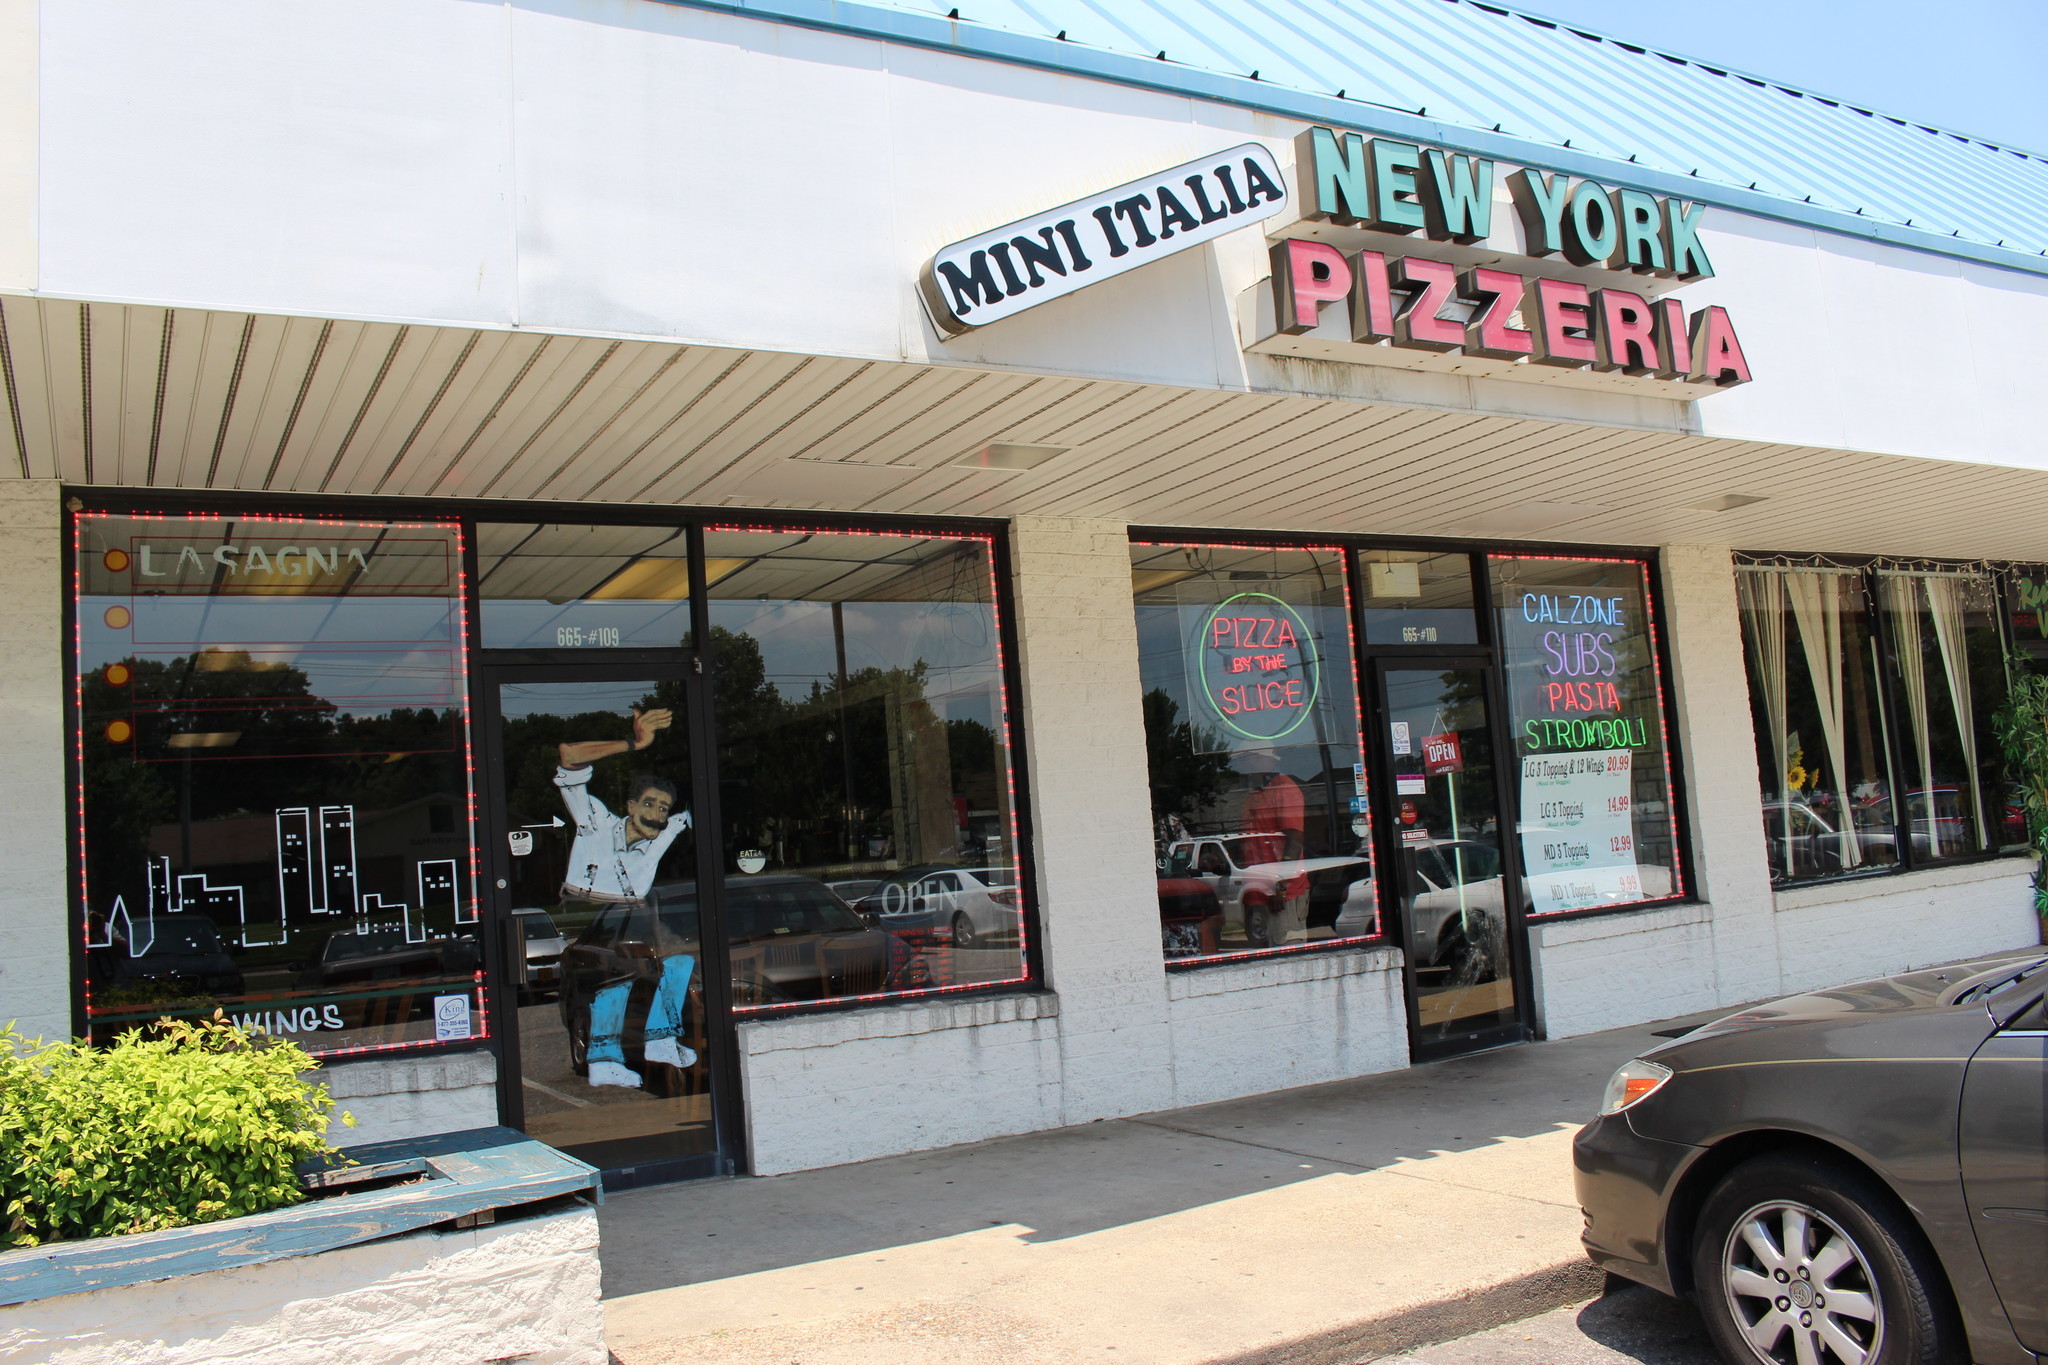 Virginia Beach pizzeria for sale on Craigslist - Daily Press